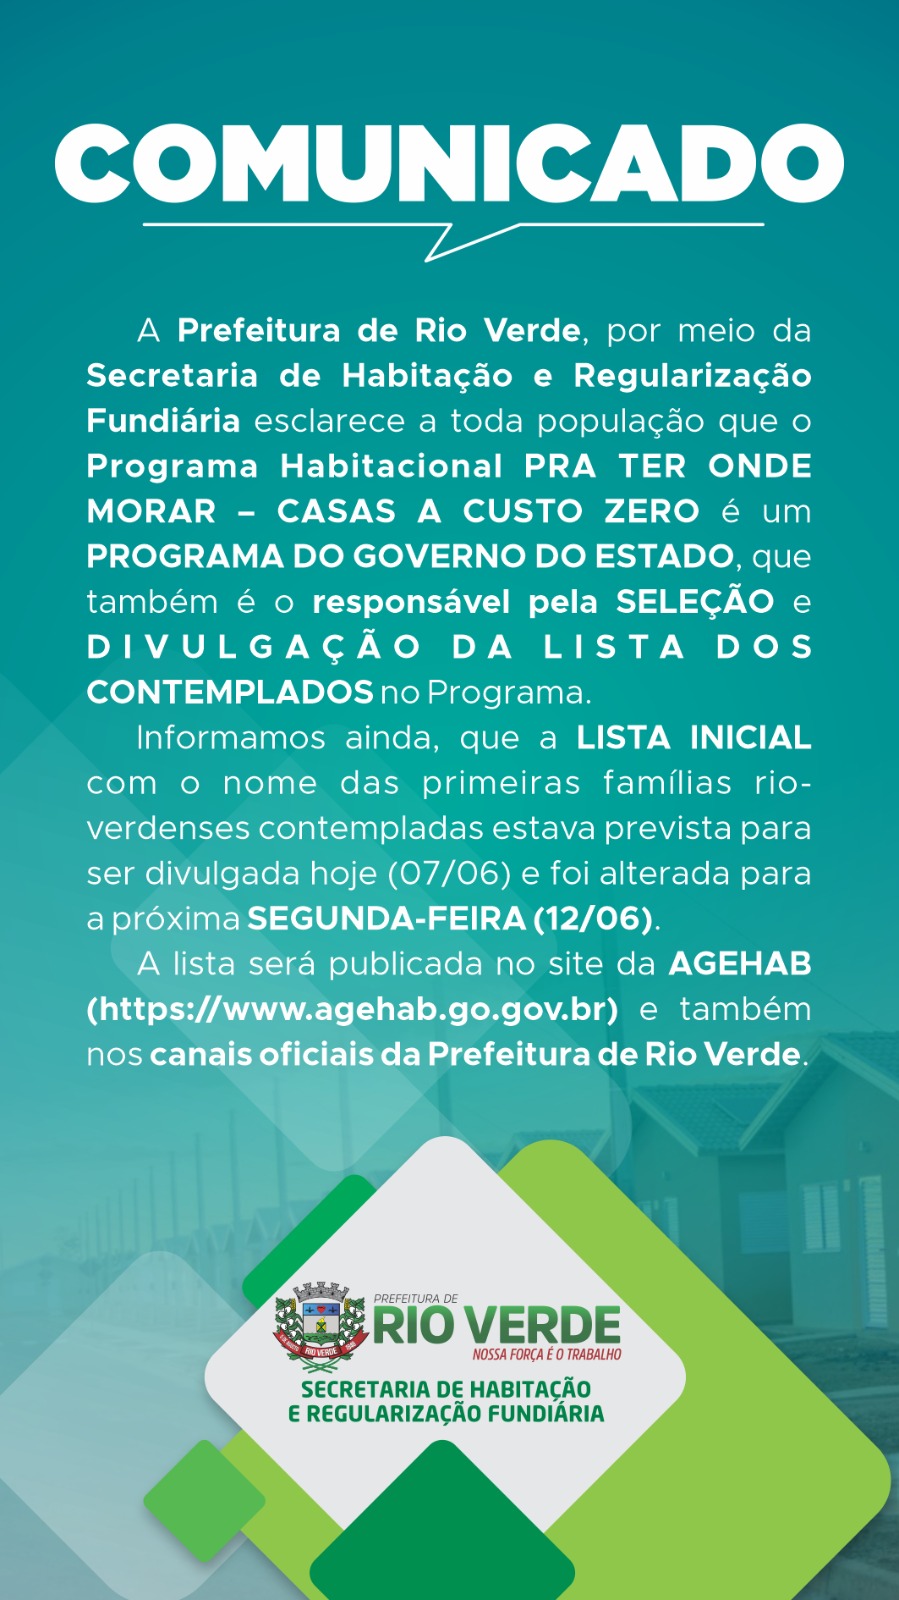 Prefeitura de Rio Verde emite nota sobre programa Para ter onde Morar